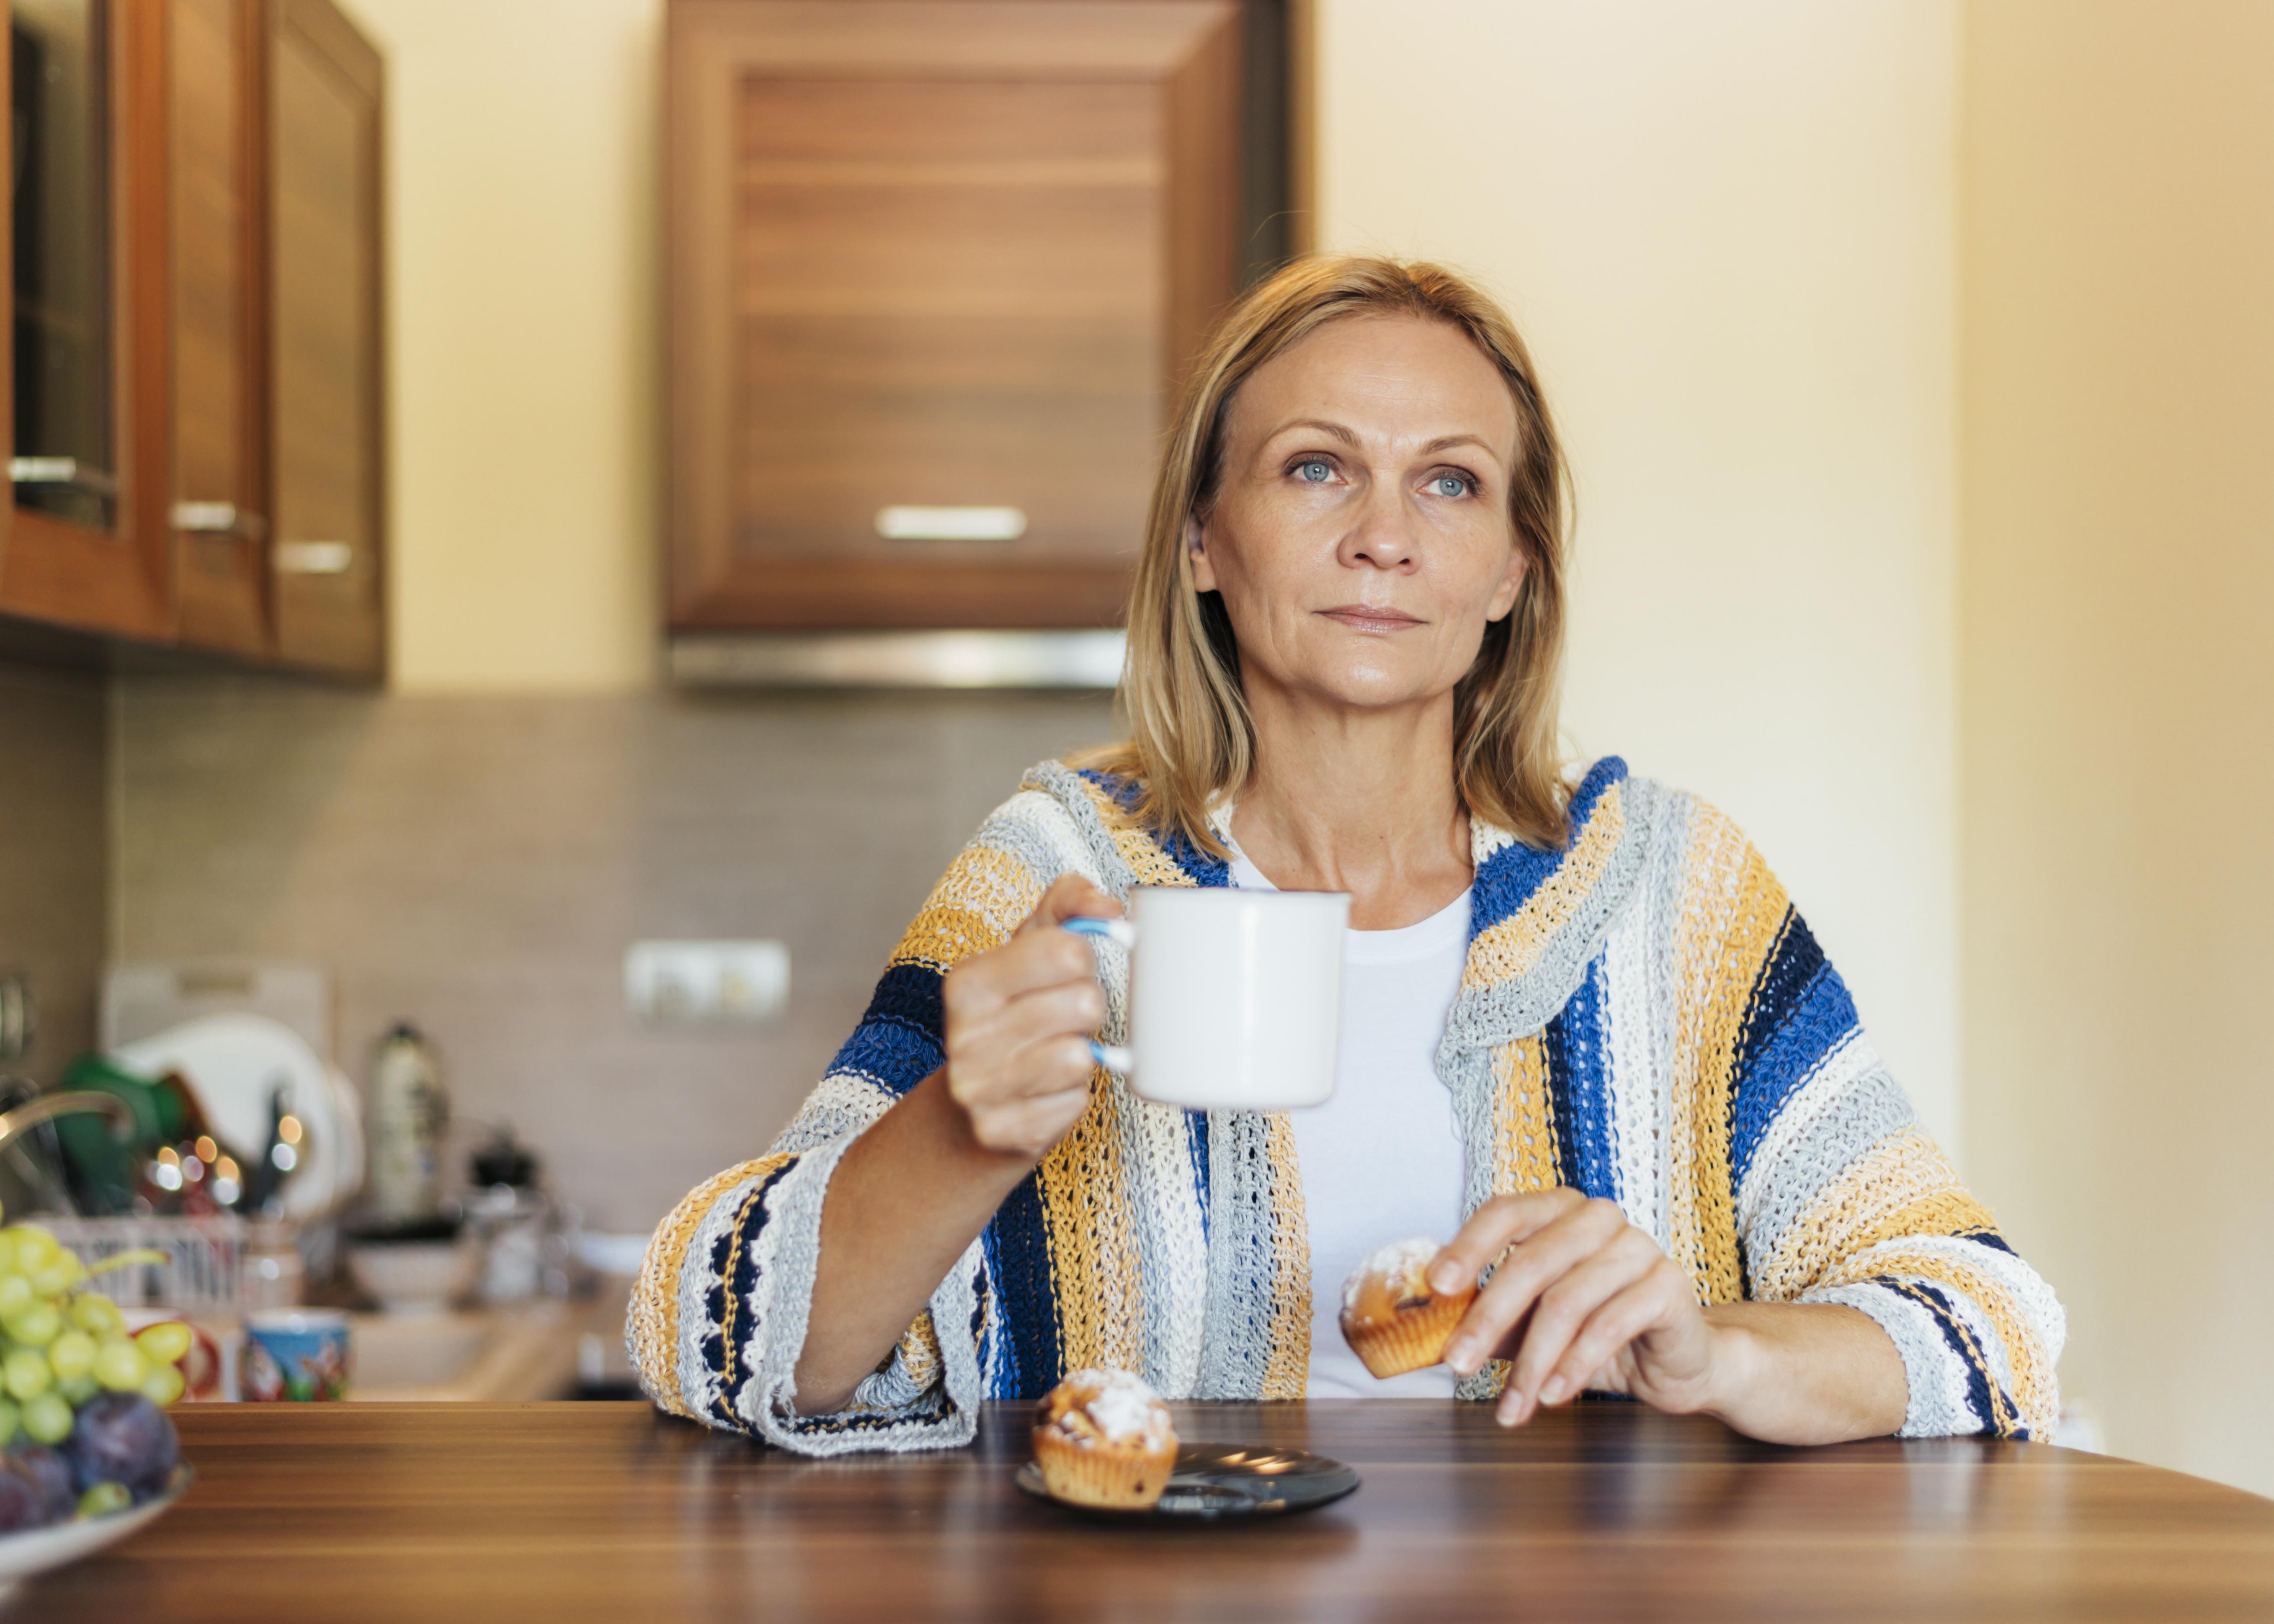 Femme dans la cuisine avec une tasse de thé | Source : Freepik